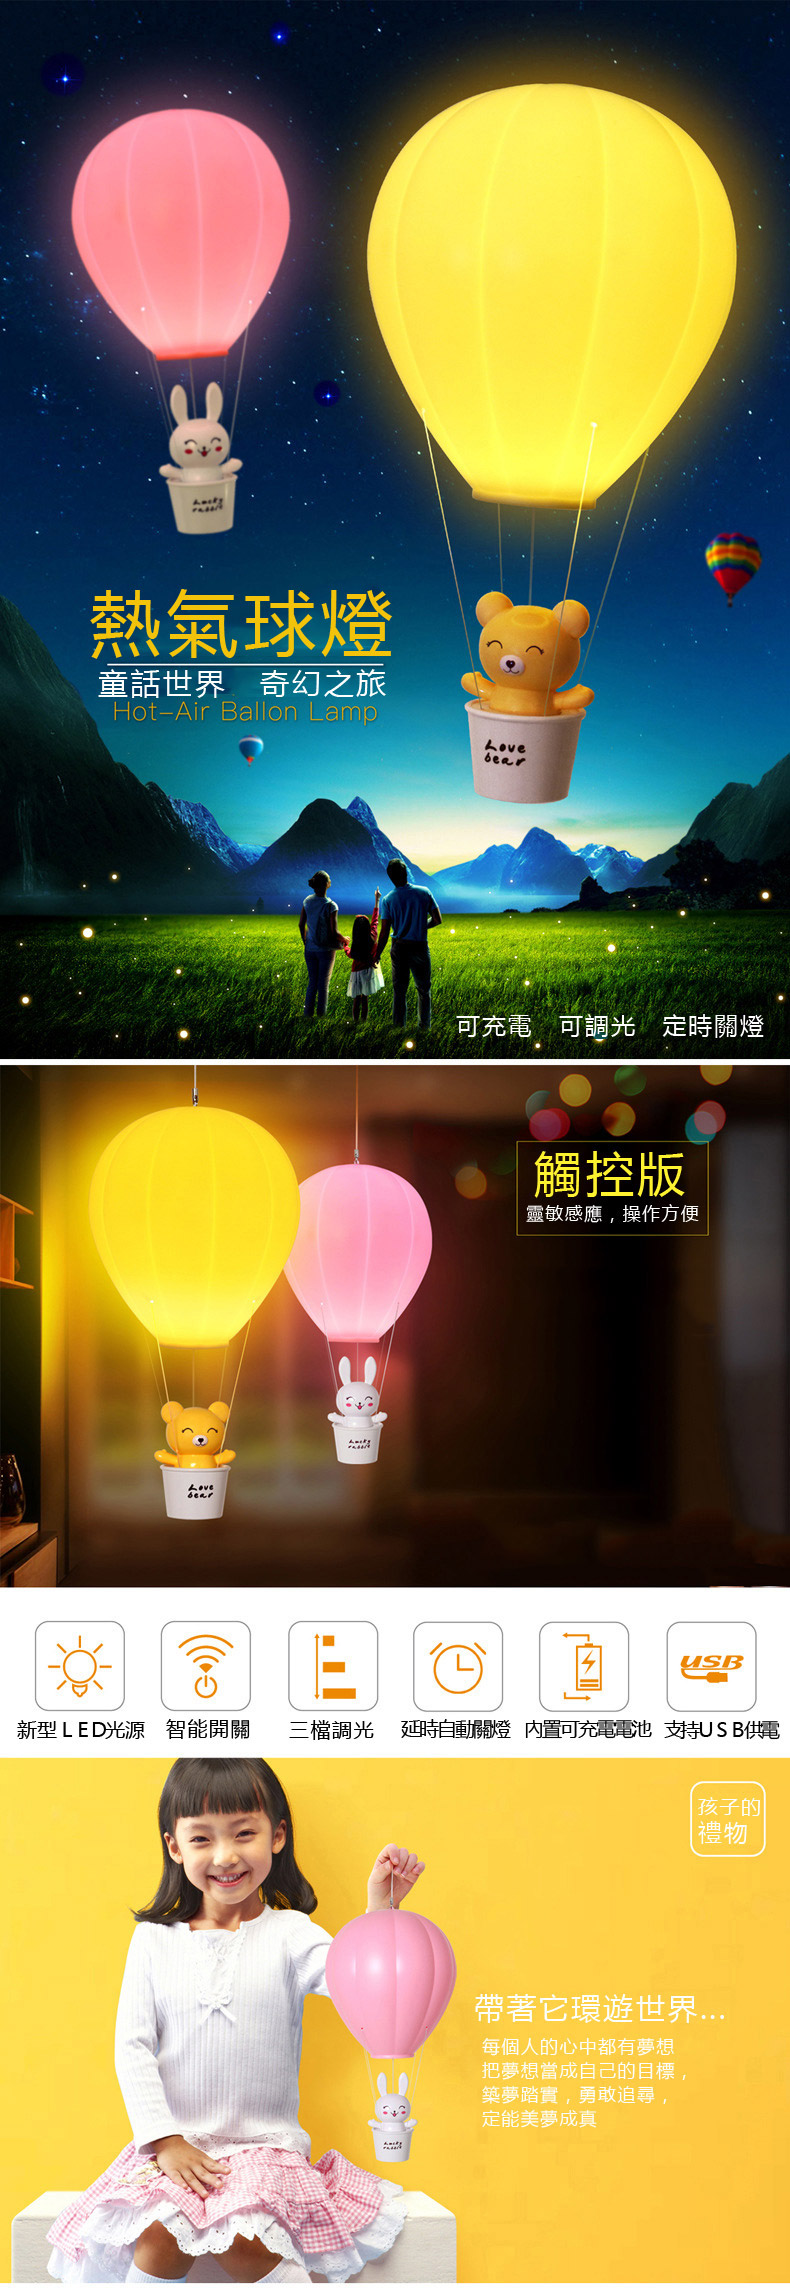 創意小物館 創意熱氣球小夜燈(觸控款) 黃色小熊